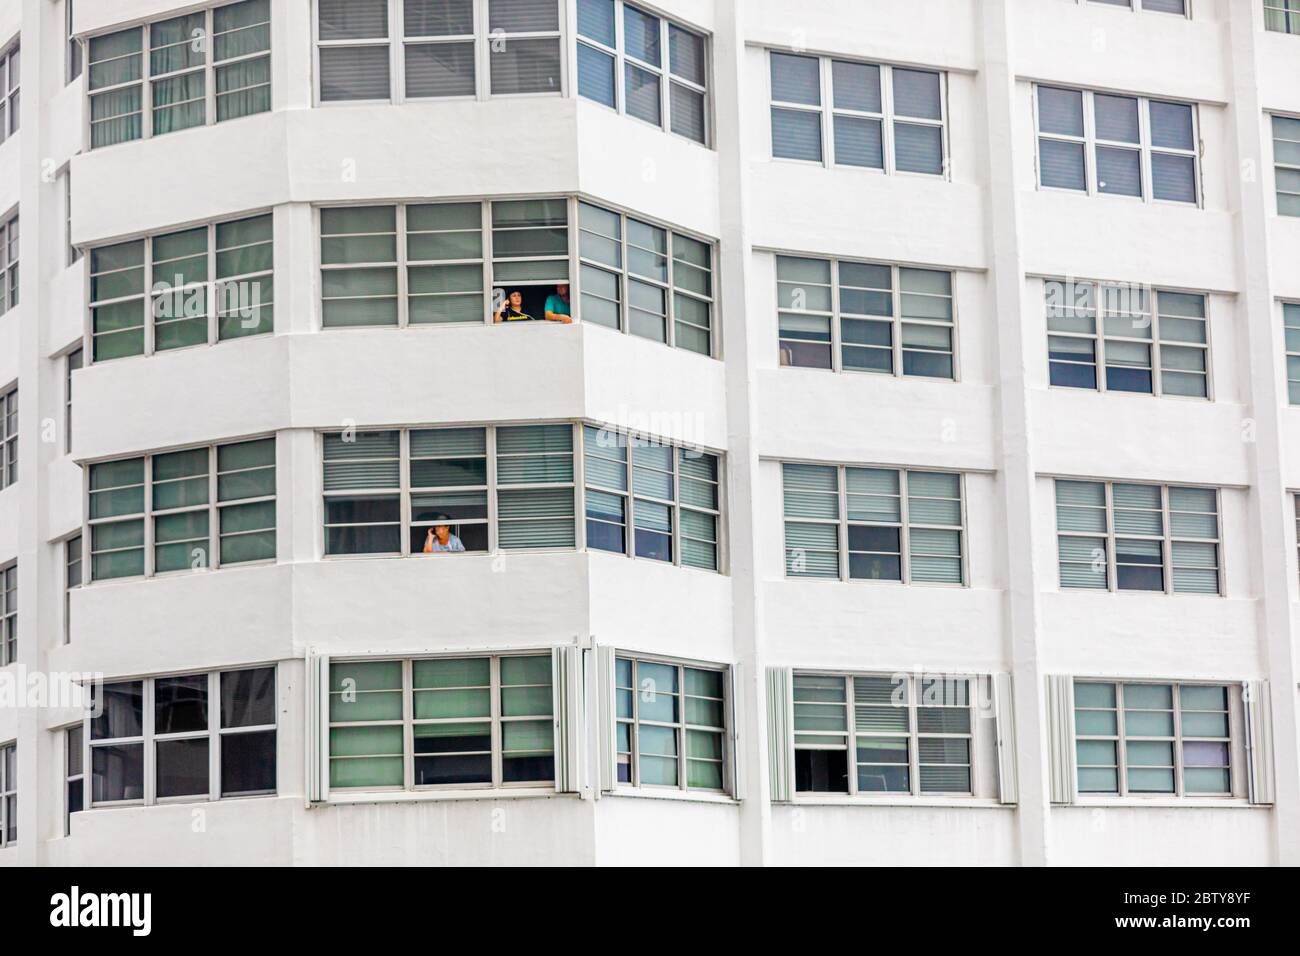 Les personnes sans balcon sont confrontées au confinement de la pandémie par leurs fenêtres dans l'immeuble four Ambassadors Apartment Building, Miami, Floride, United Stat Banque D'Images